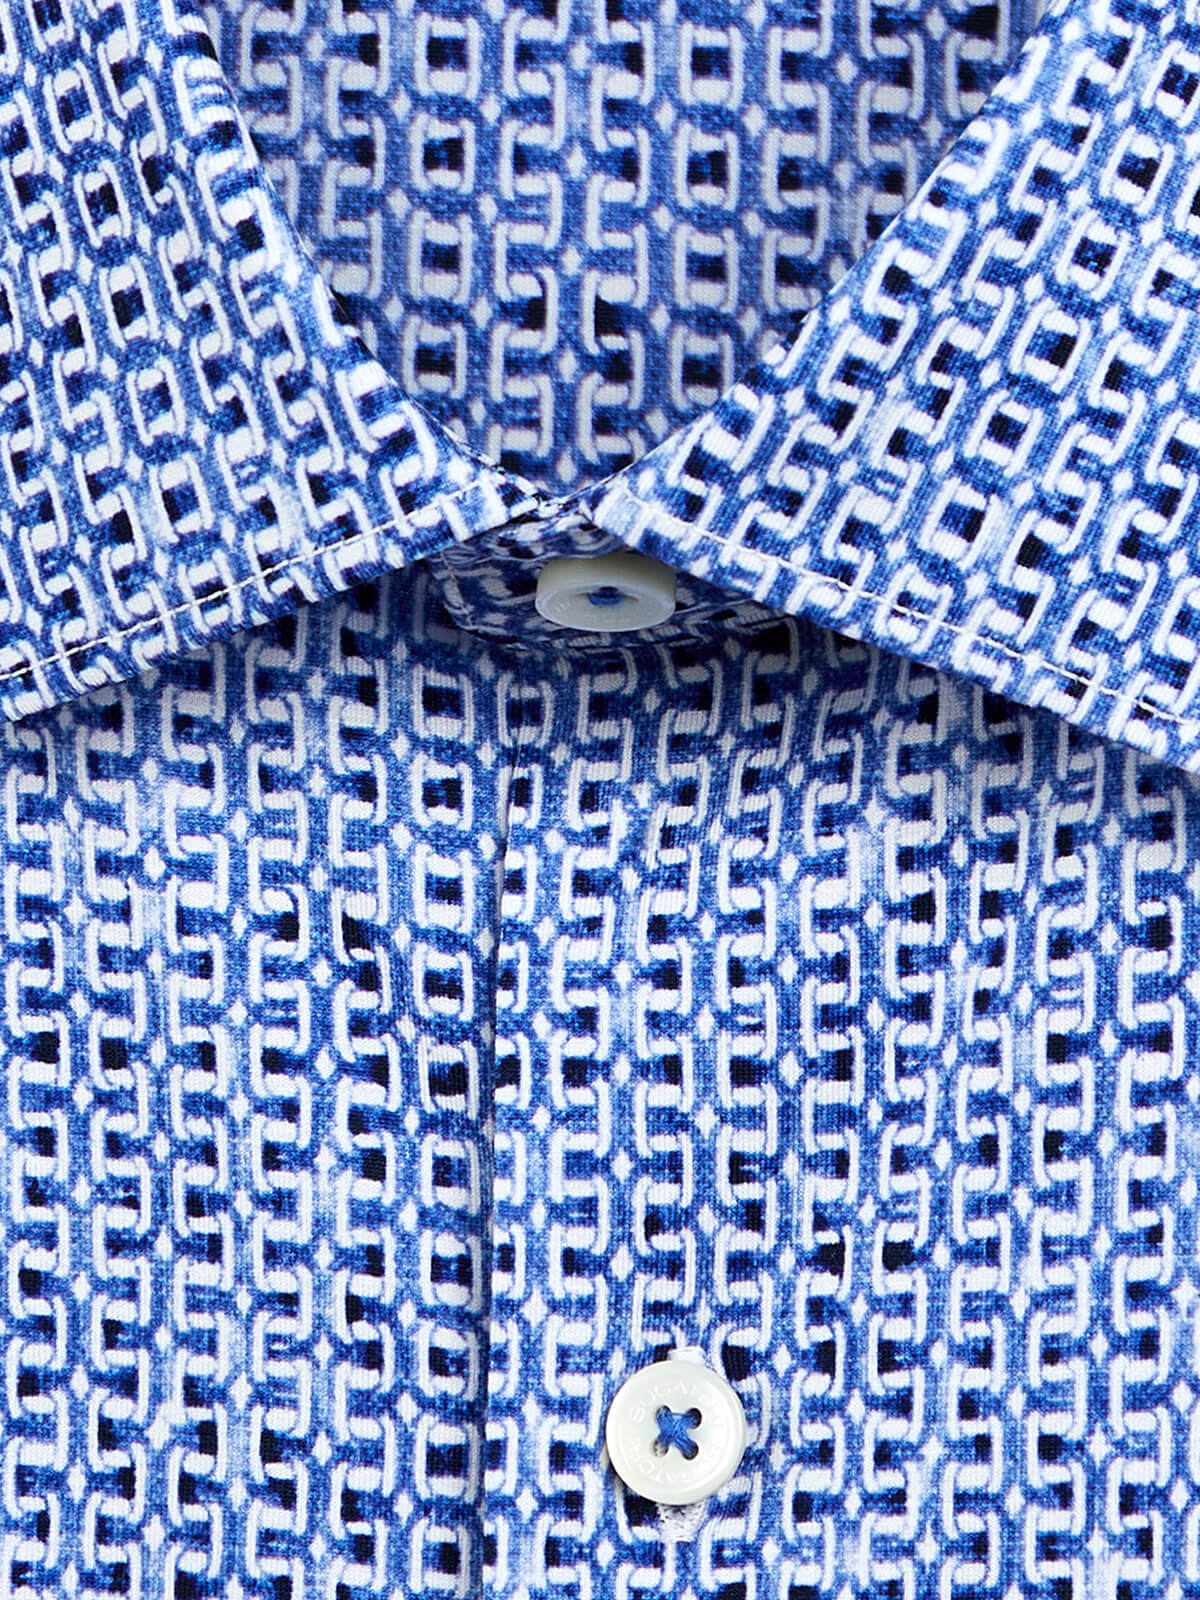 OoohCottonTech Short Sleeve Shirt – Classic Blue